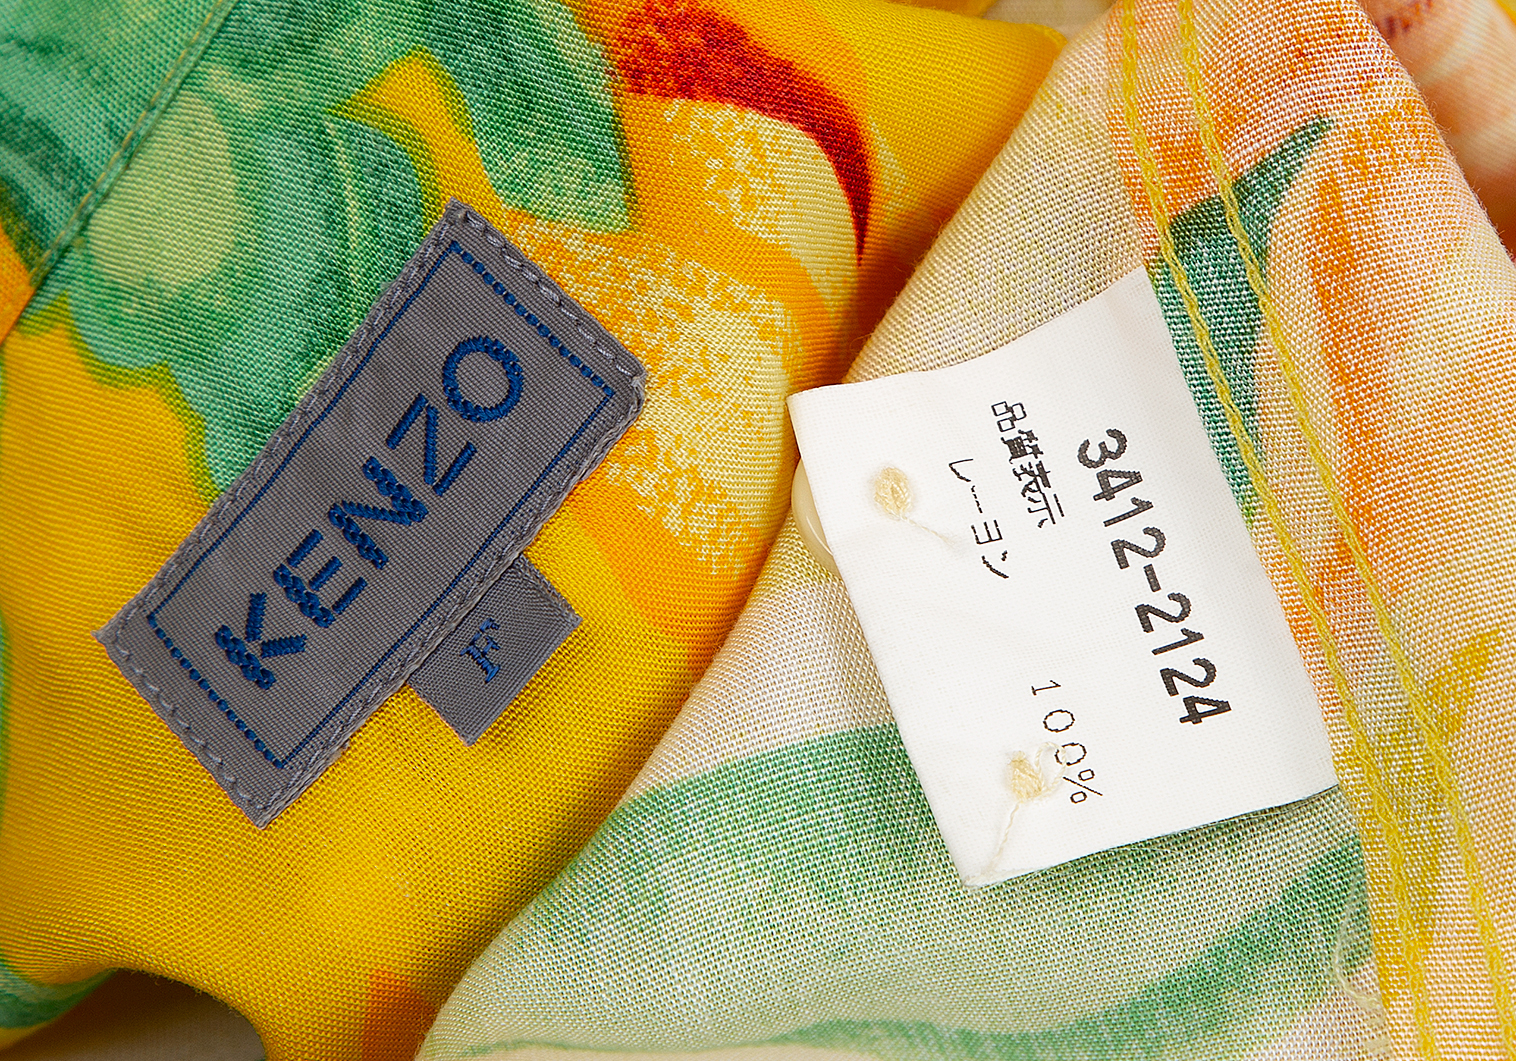 ケンゾーKENZO フラワープリントオープンカラー半袖レーヨンシャツ 黄